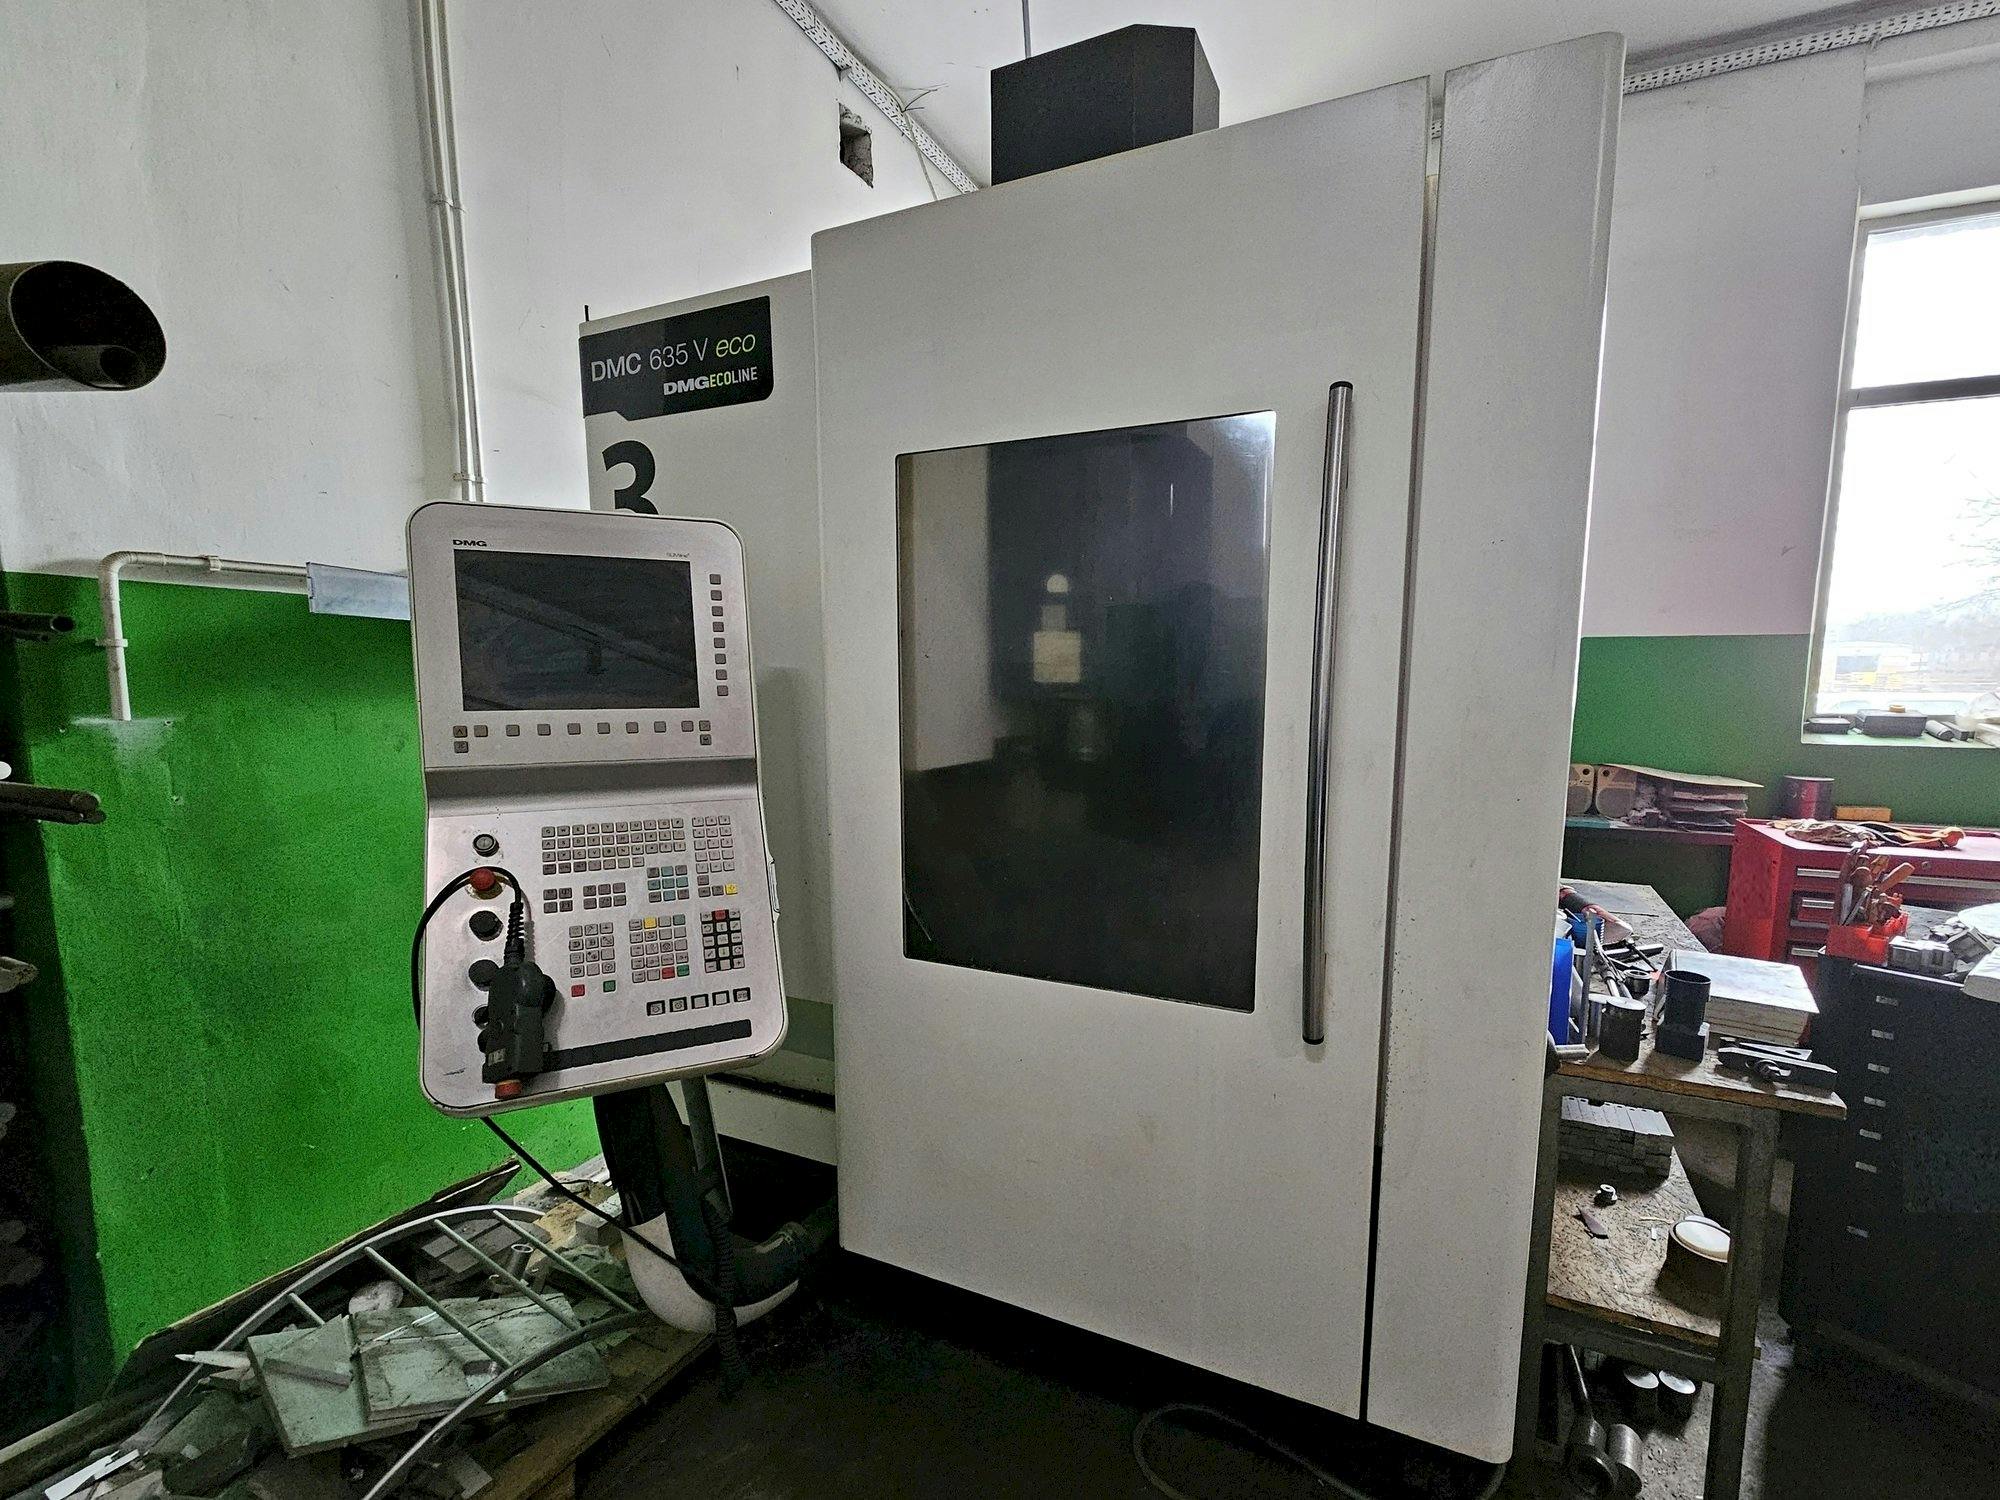 Front view of DMG DMC 635 V ecoline  machine